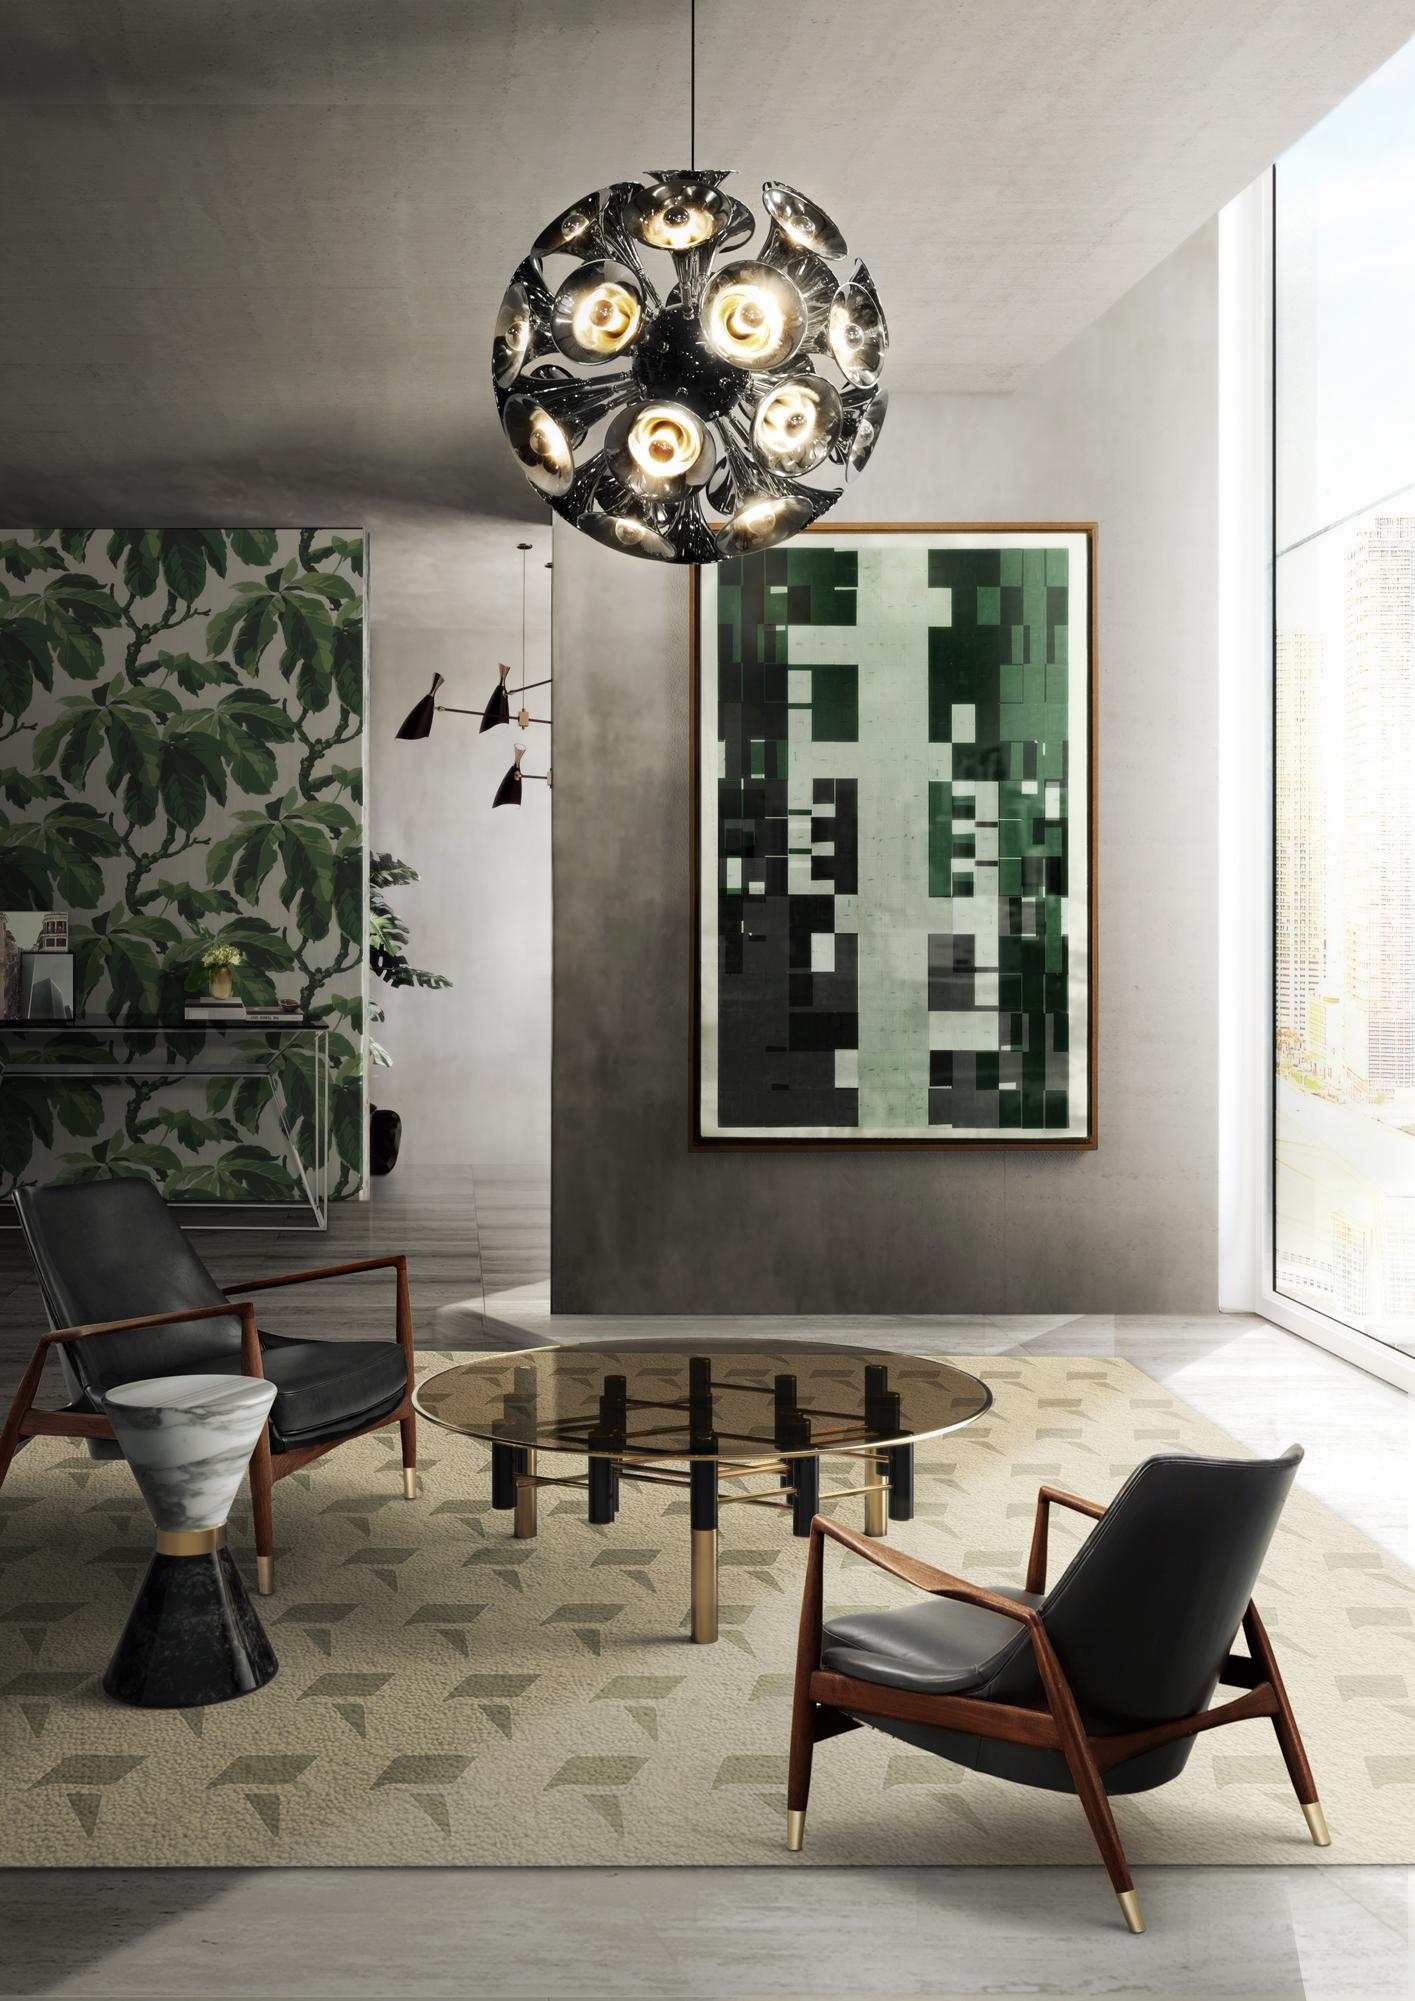 Pendelleuchte im "Art Deco" Stil #couchtisch #teppich #wohnzimmer #sessel #pendelleuchte #fototapete #glascouchtisch #zimmergestaltung ©Delightfull